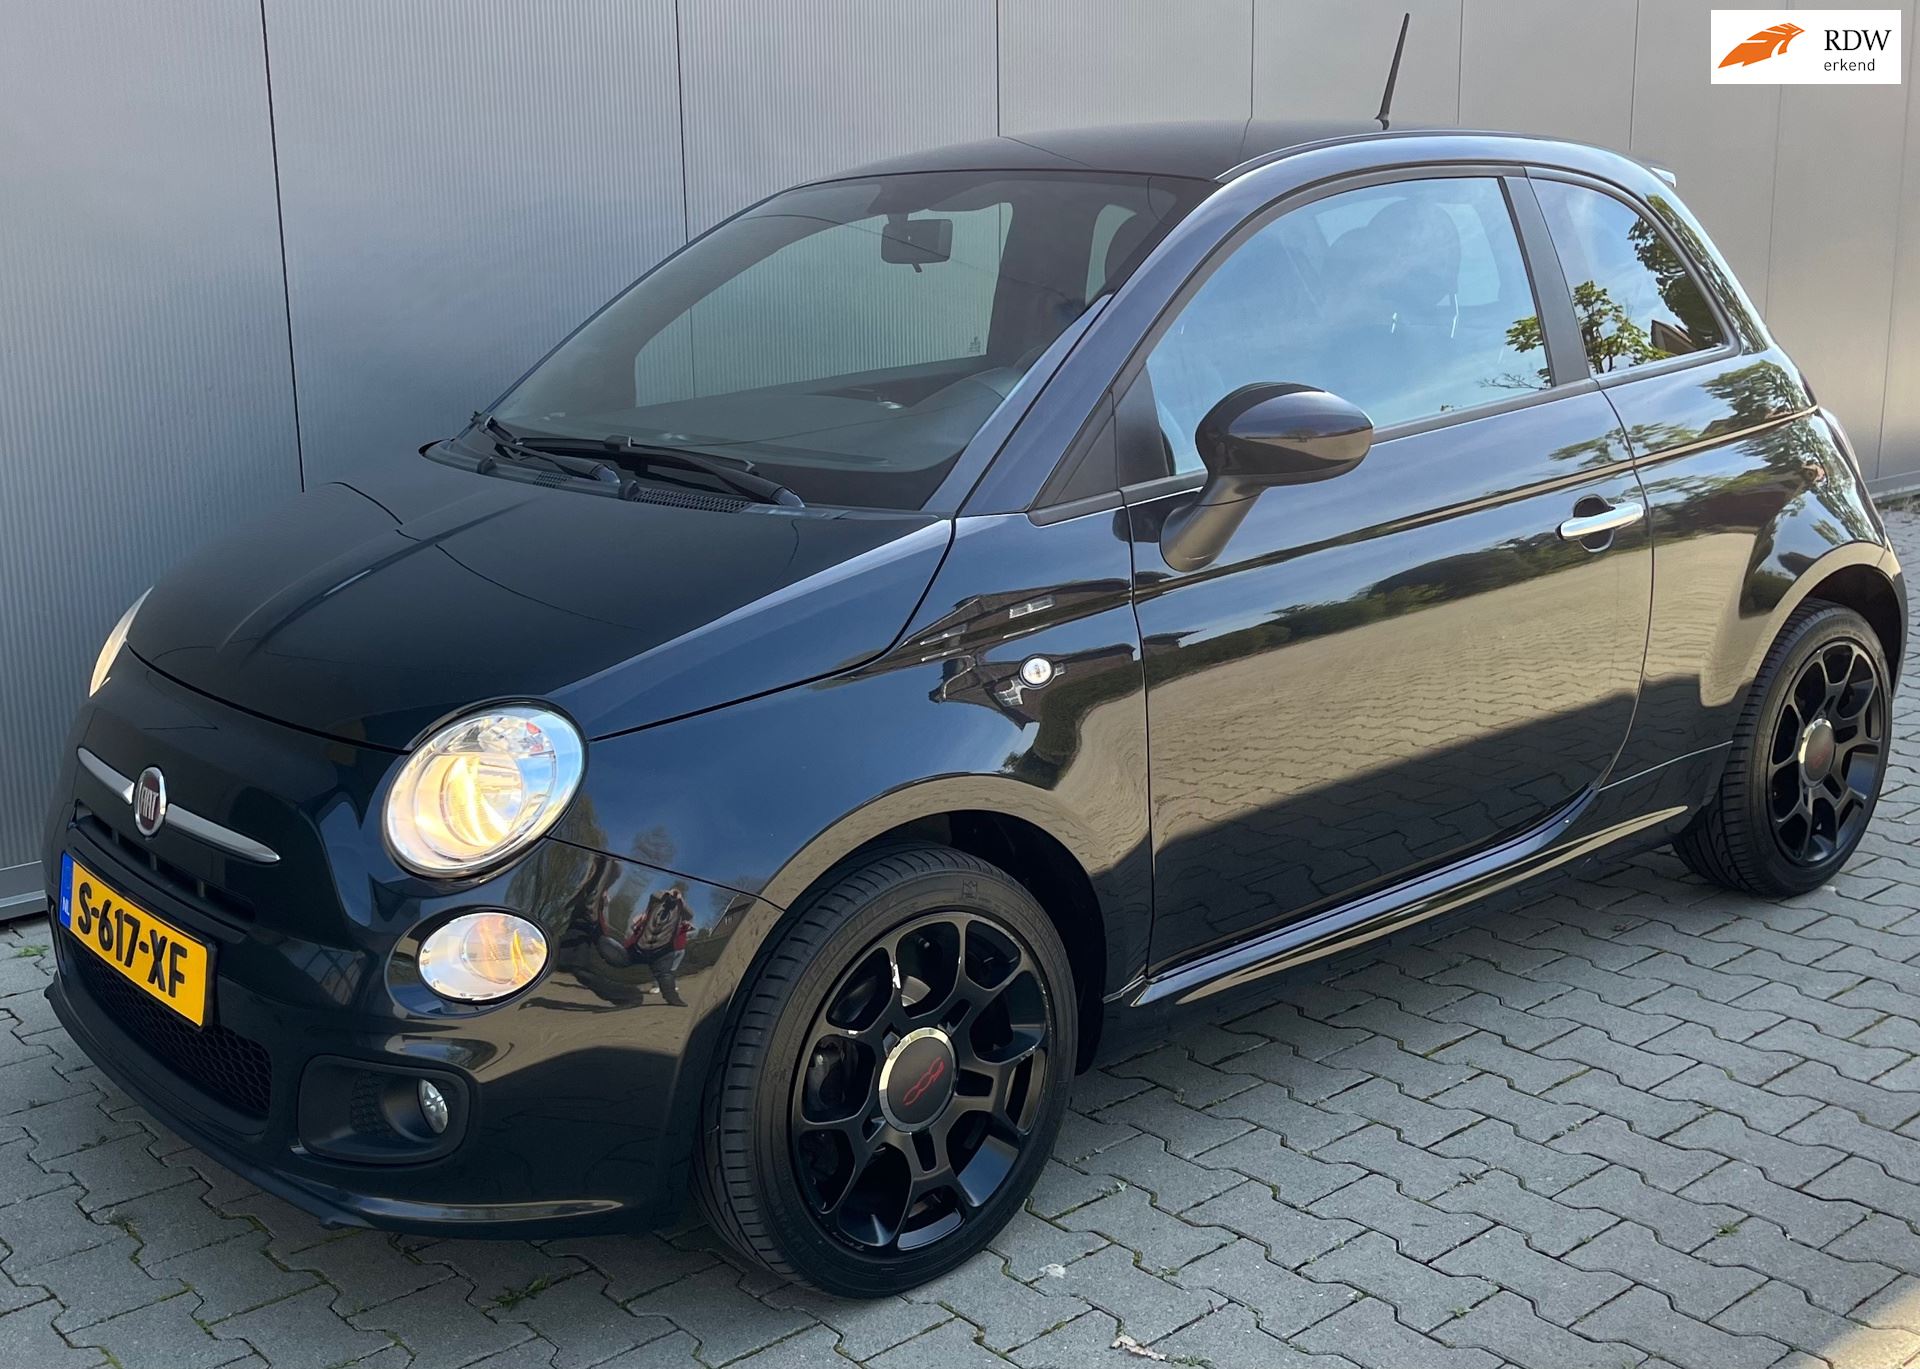 Betasten Verwisselbaar Maan Fiat 500 - 1.2 Sport zwart incl Airco, bluetooth - stuurbediening en zeer  luxe audiosysteem Benzine uit 2014 - www.stadsautotwente.nl